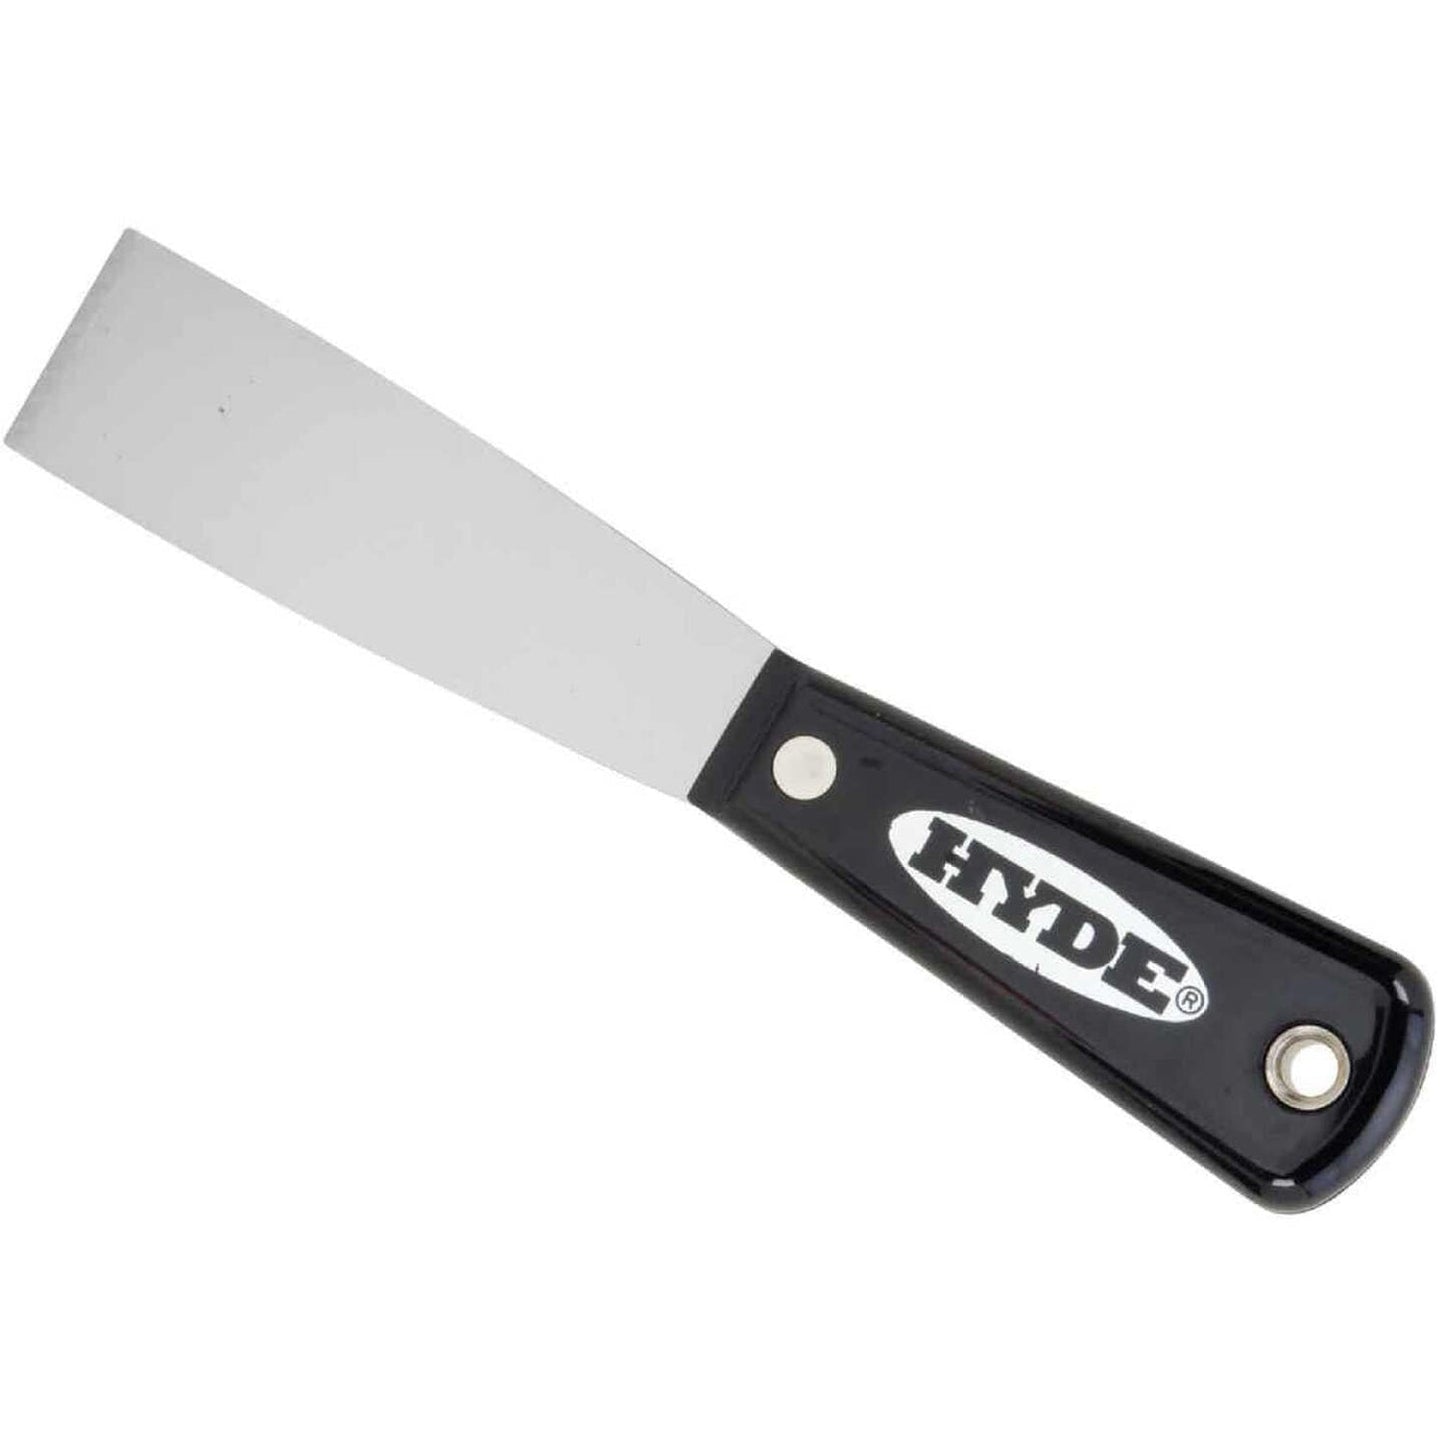 Hyde 02000 Flexible Carbon Steel Putty Knife / Scraper 32mm (1-1/4")